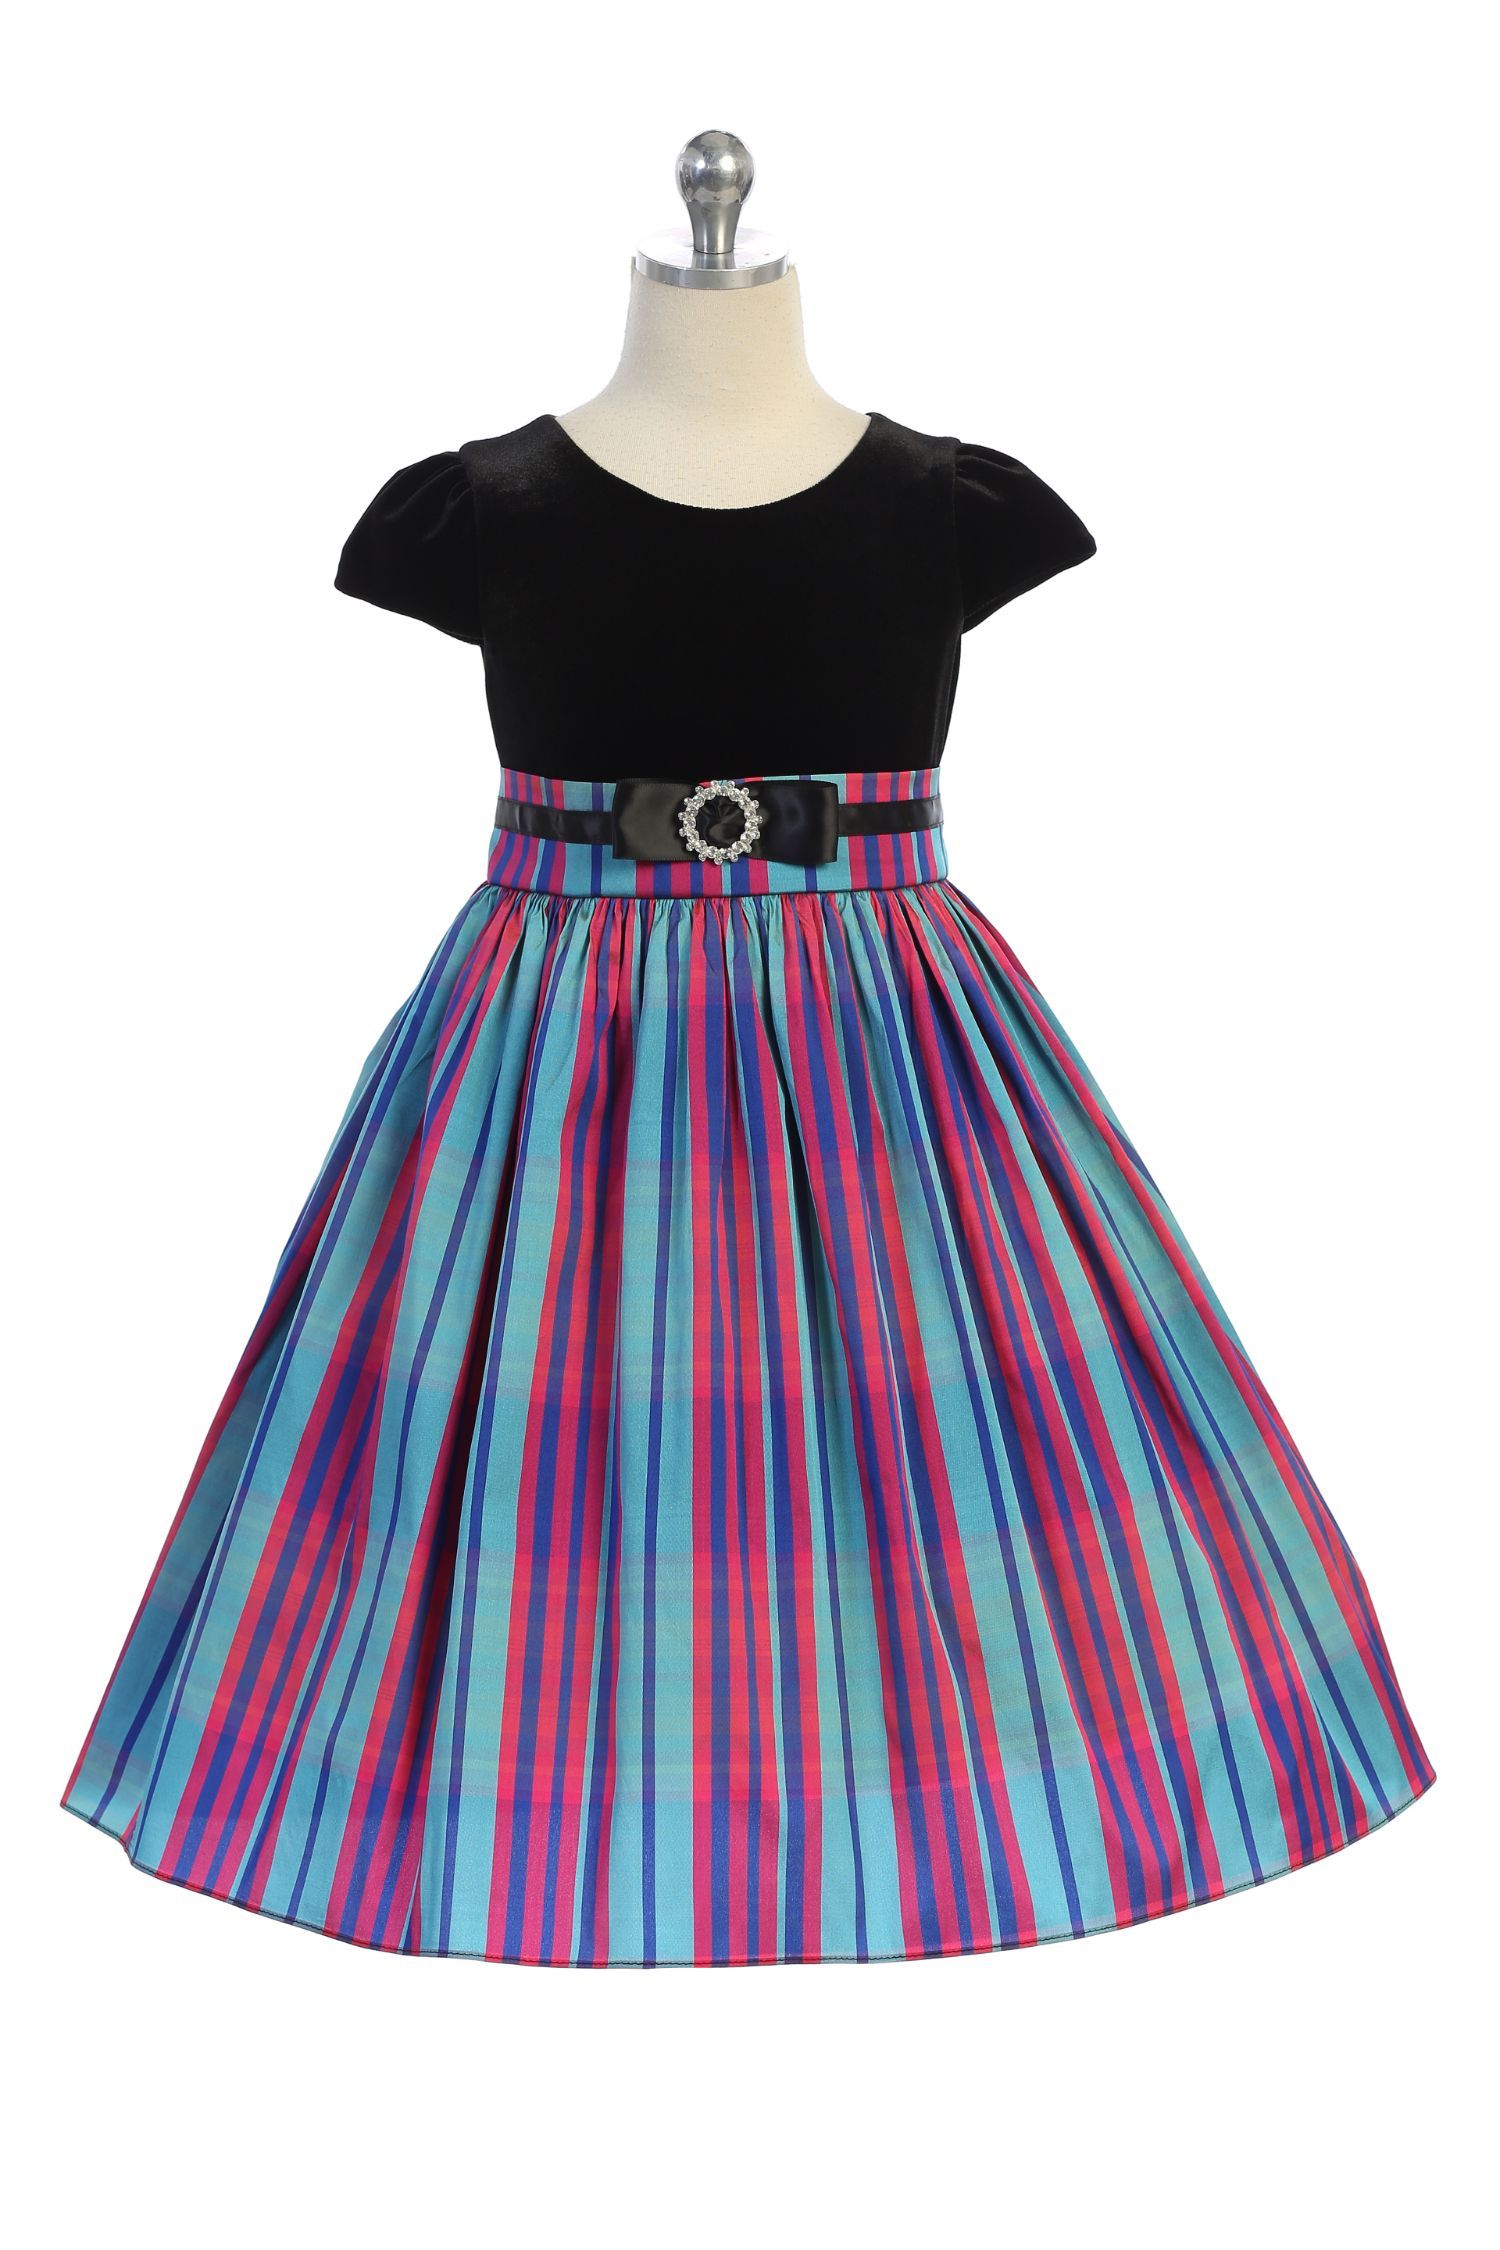 Dress - Velvet Sleeve Plaid Plus Size Girl Dress